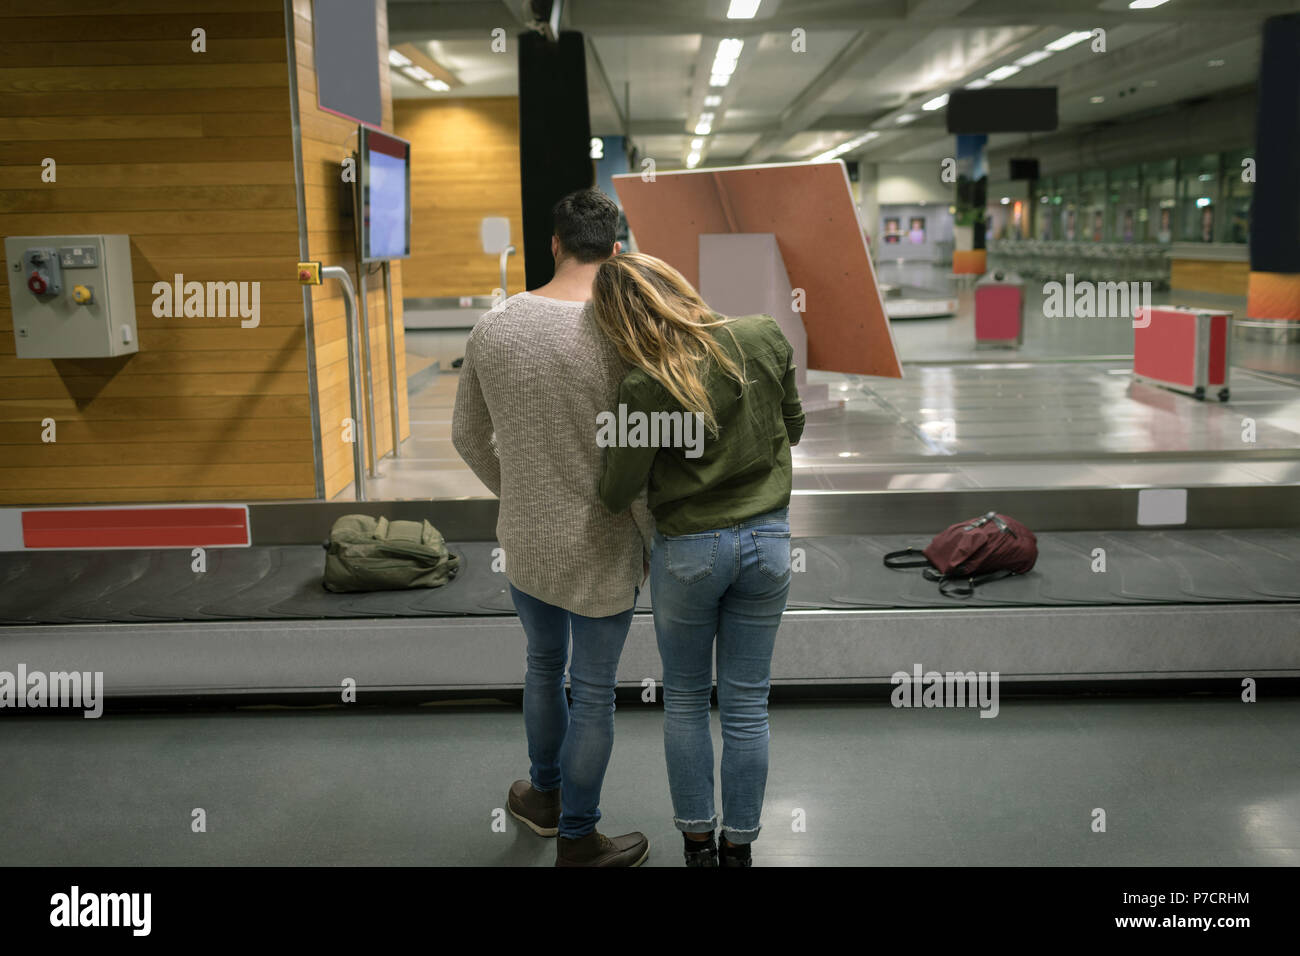 Paar einander umarmen am Flughafen Stockfoto